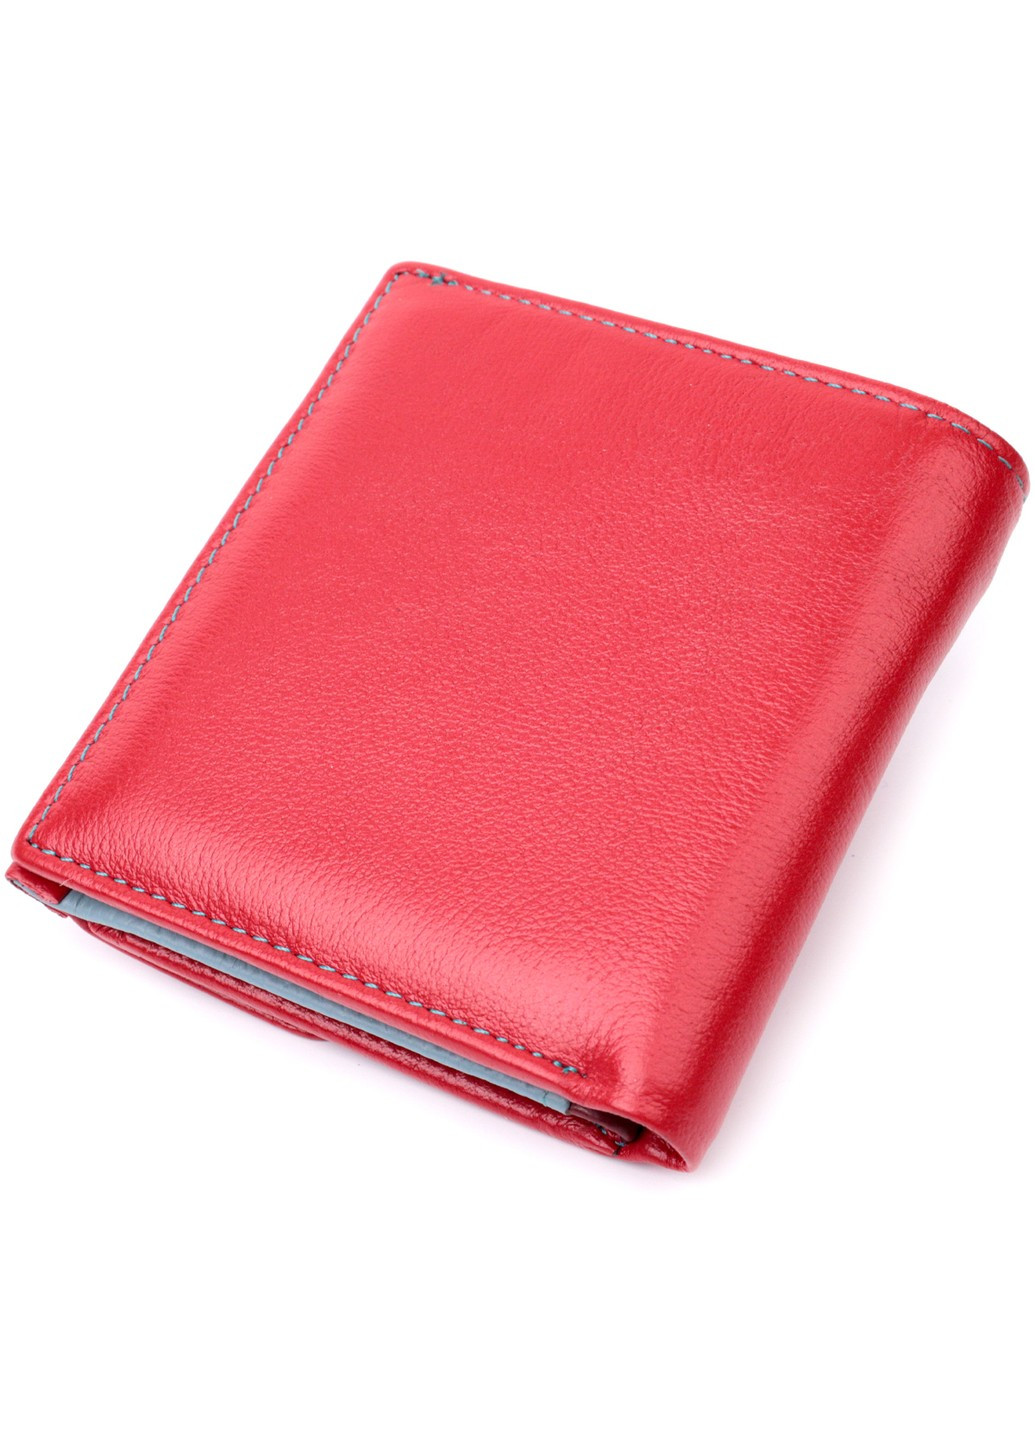 Женский кошелек среднего размера из натуральной кожи 19496 Красный st leather (278001030)